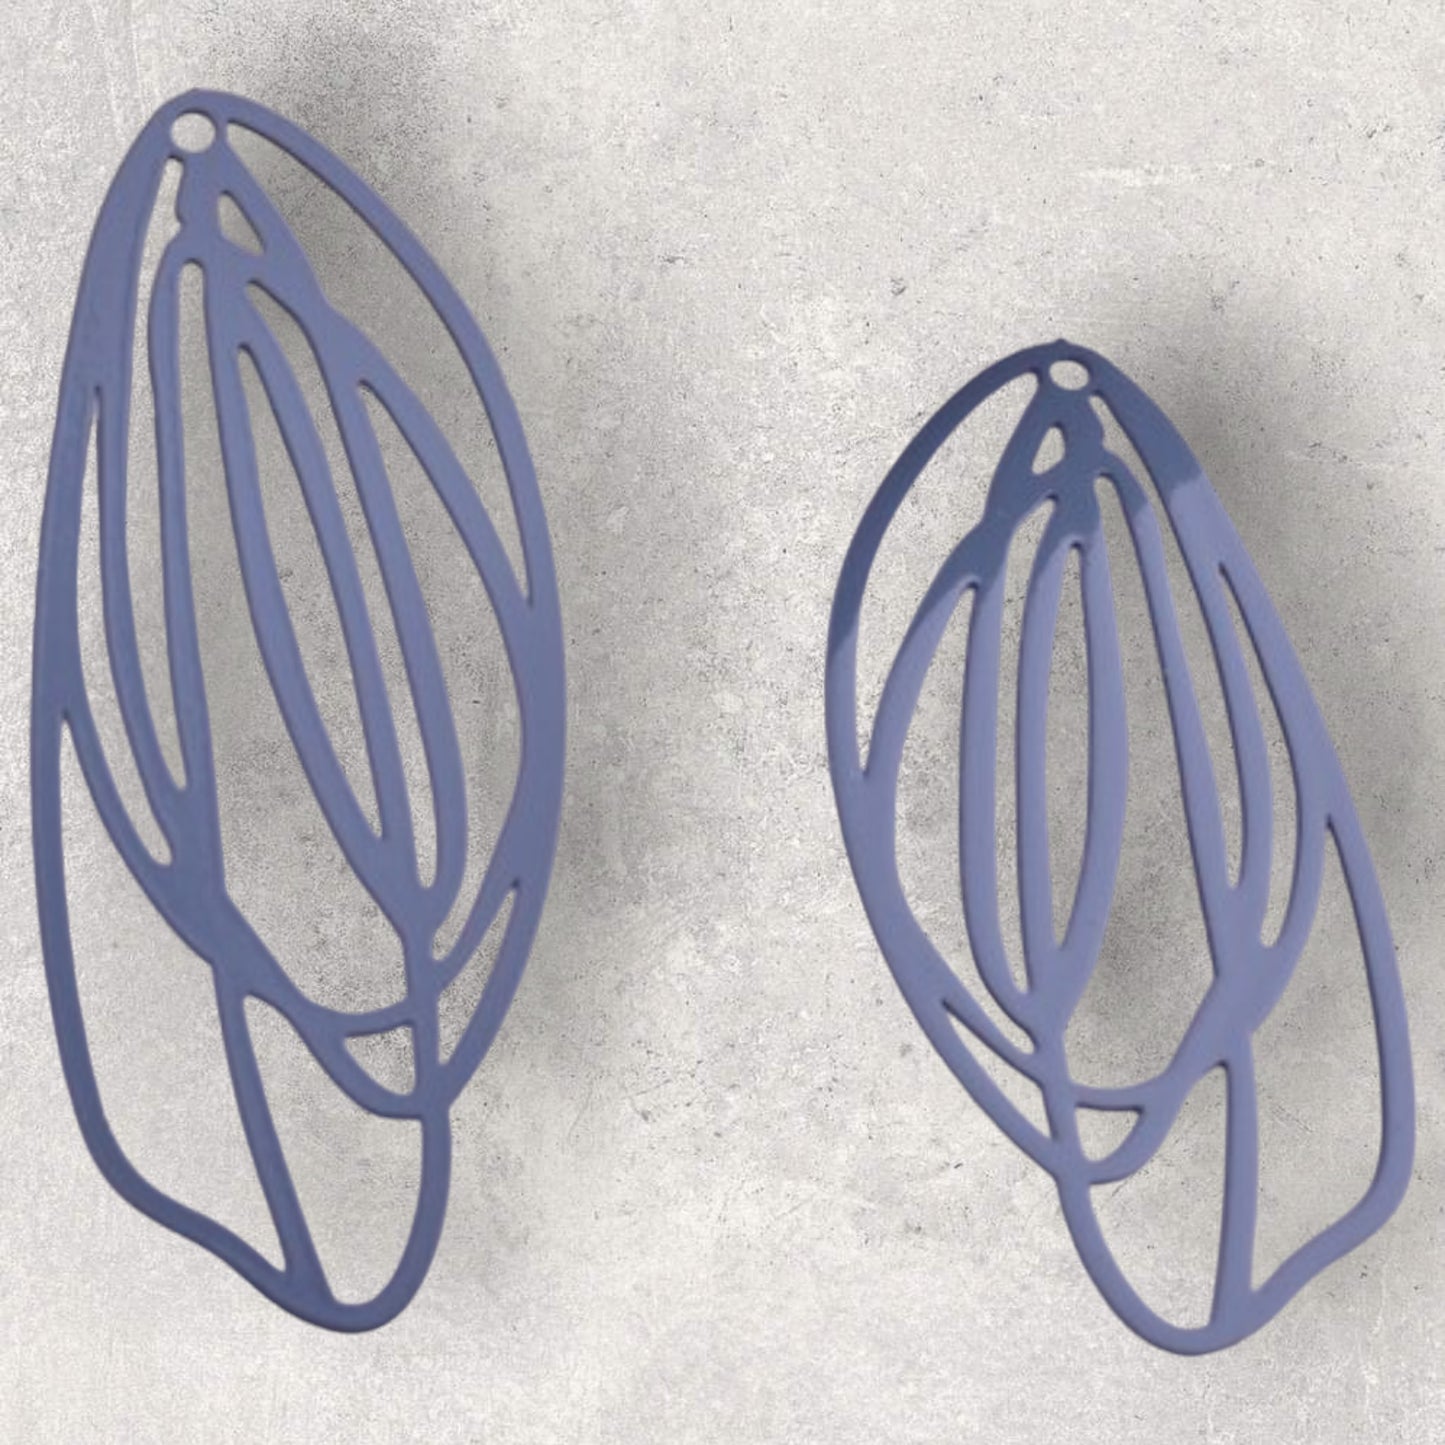 Leaf Drop Large Oval Loop Filigree Earring Charm - 2ea (1 pair)